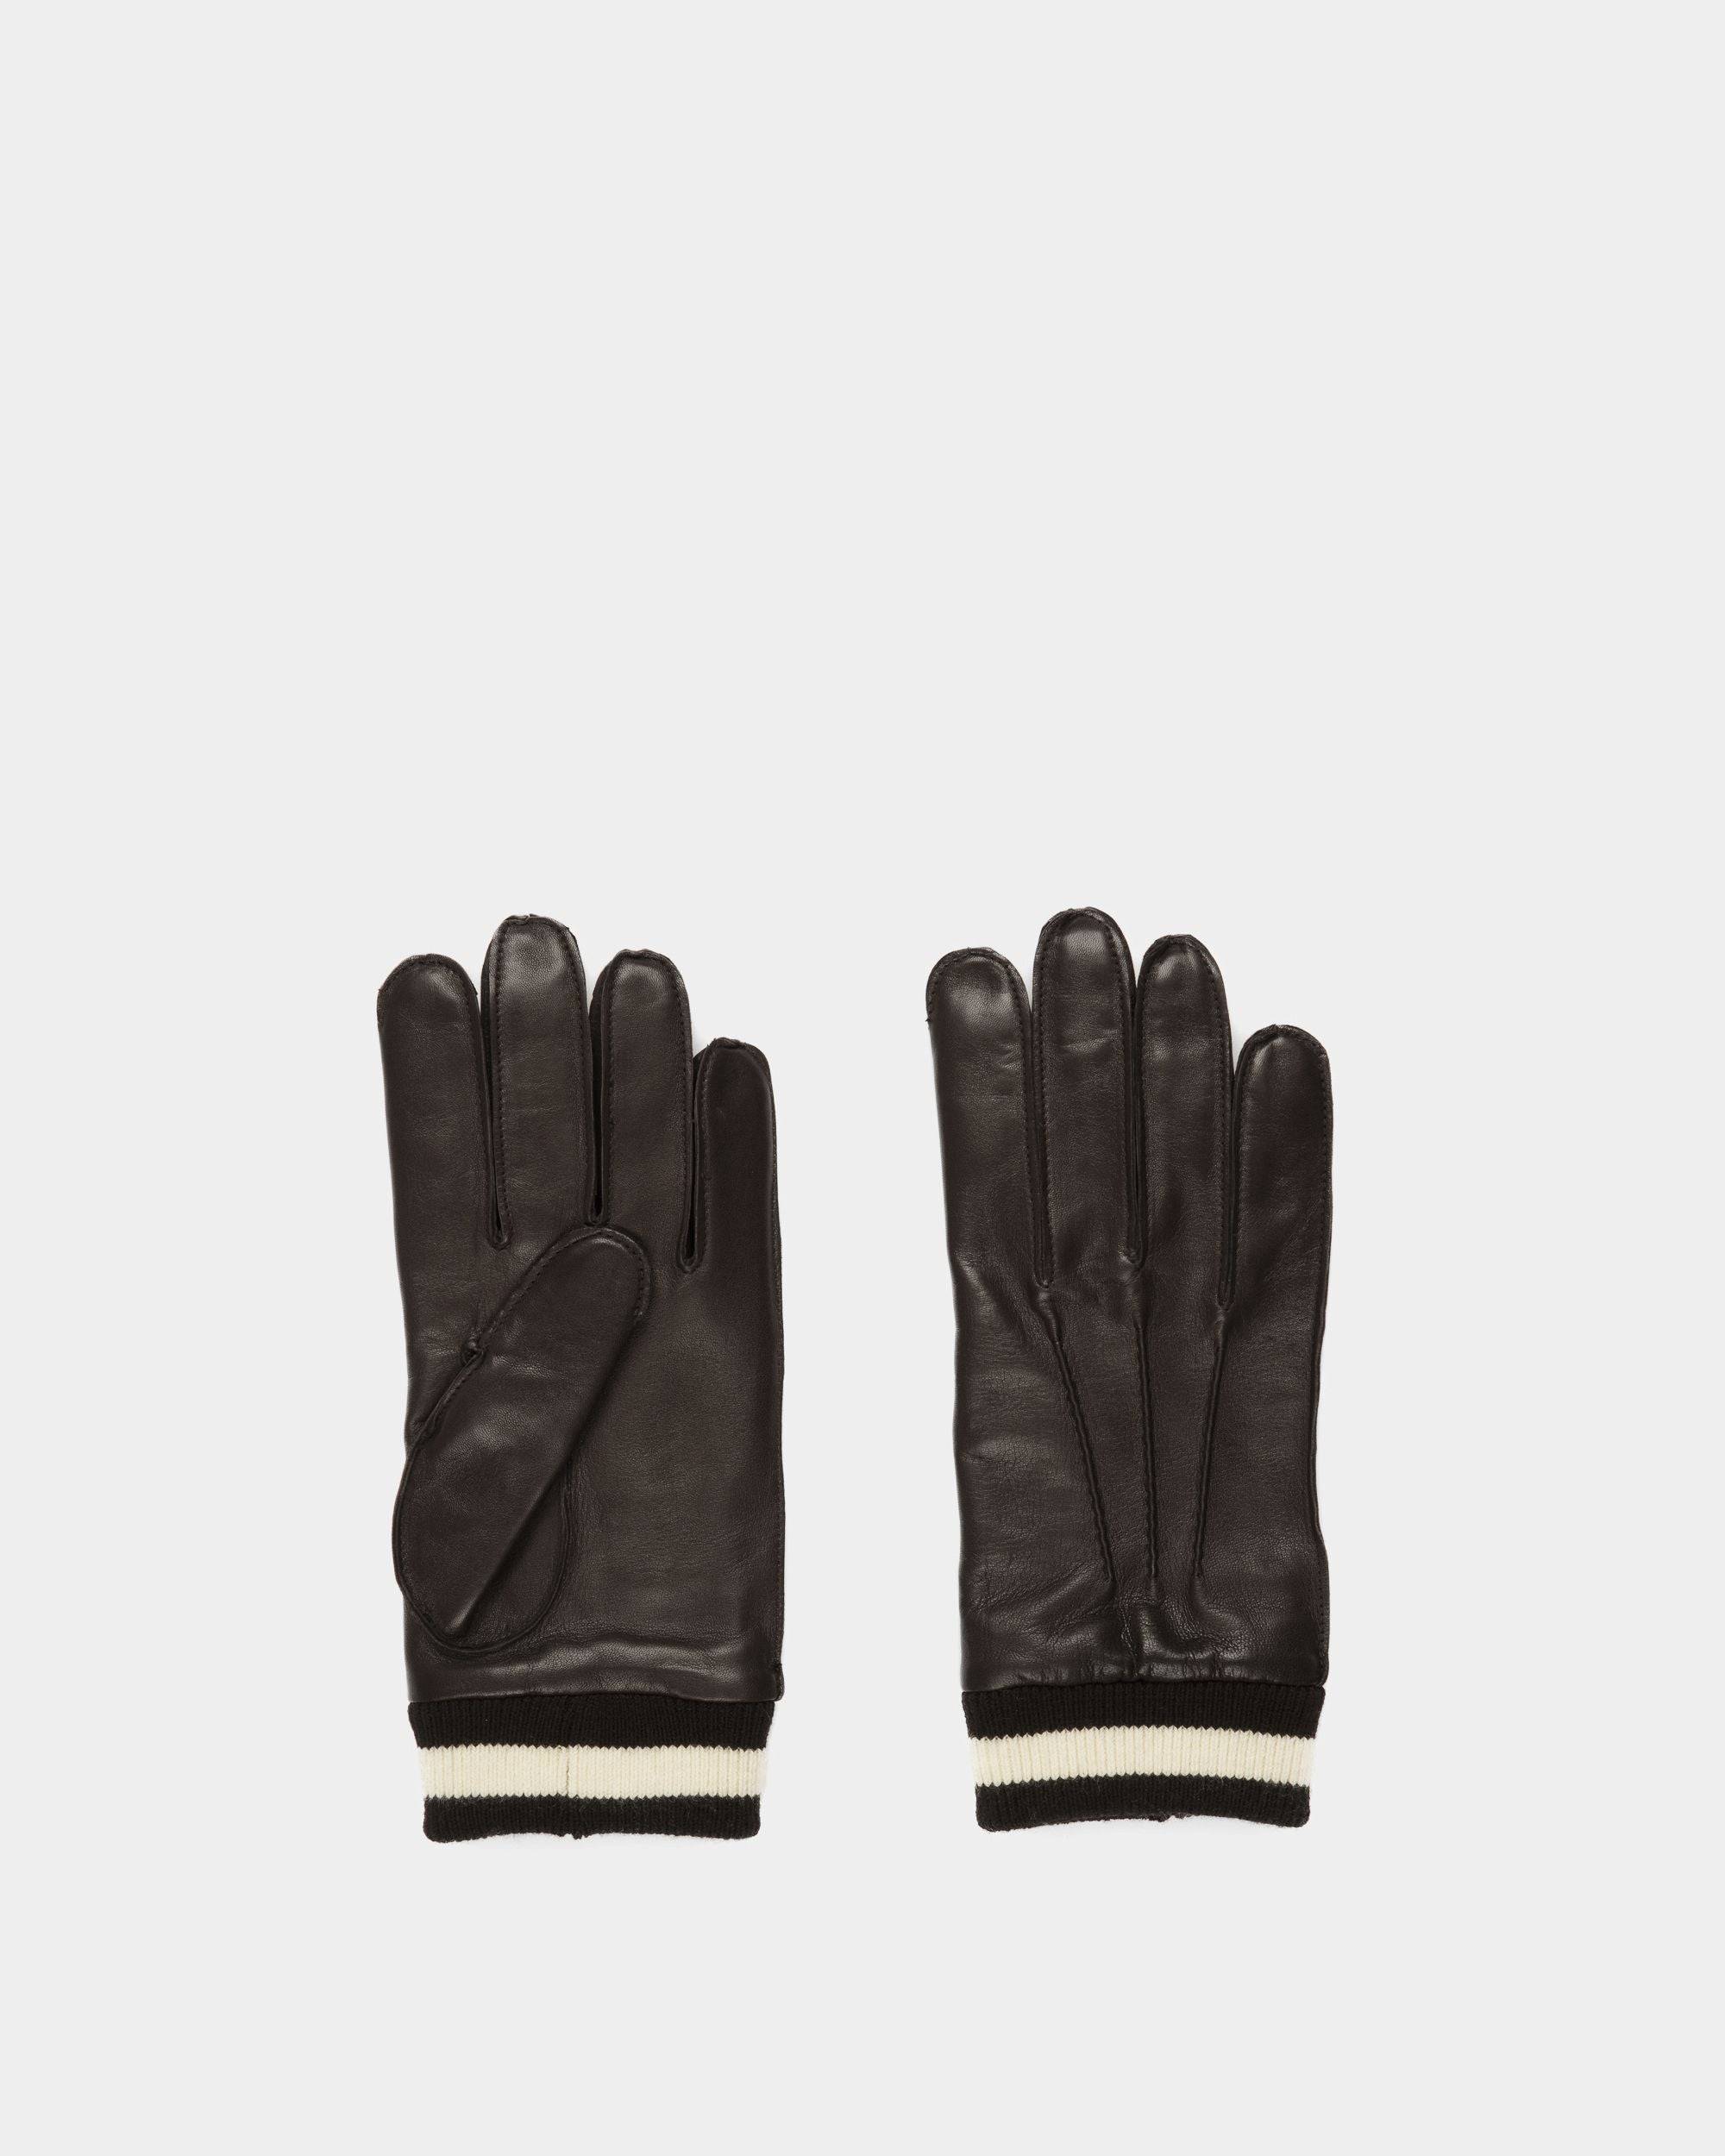 Stripe Gloves | Men's Gloves | Black Leather | Bally | Still Life Top